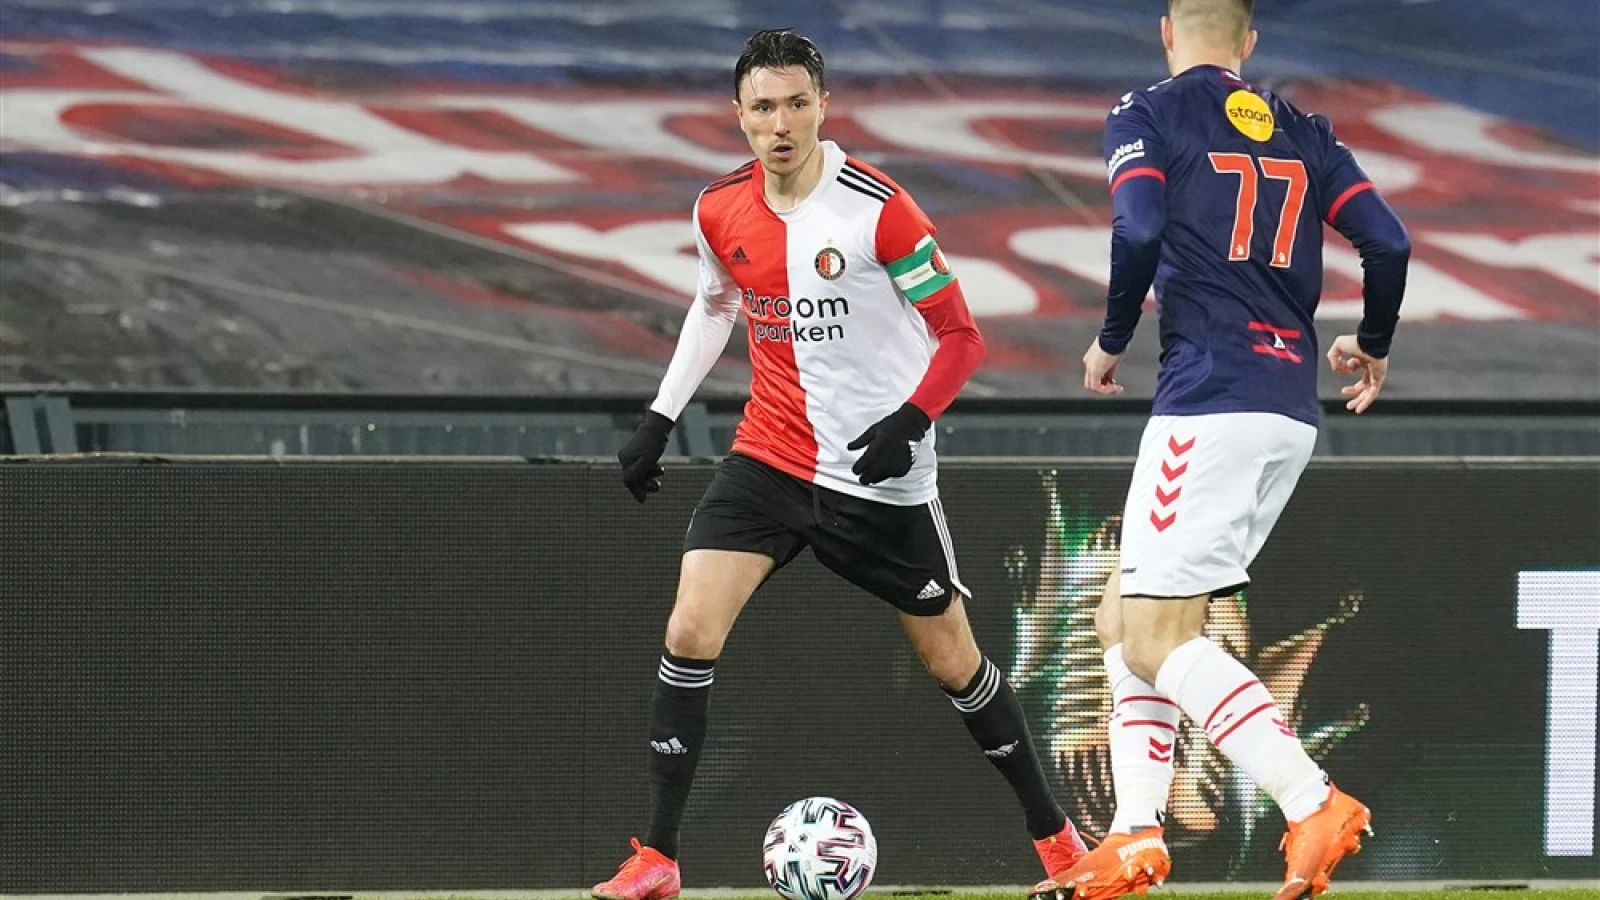 LIVE | Feyenoord - FC Emmen 1-1 | Einde wedstrijd